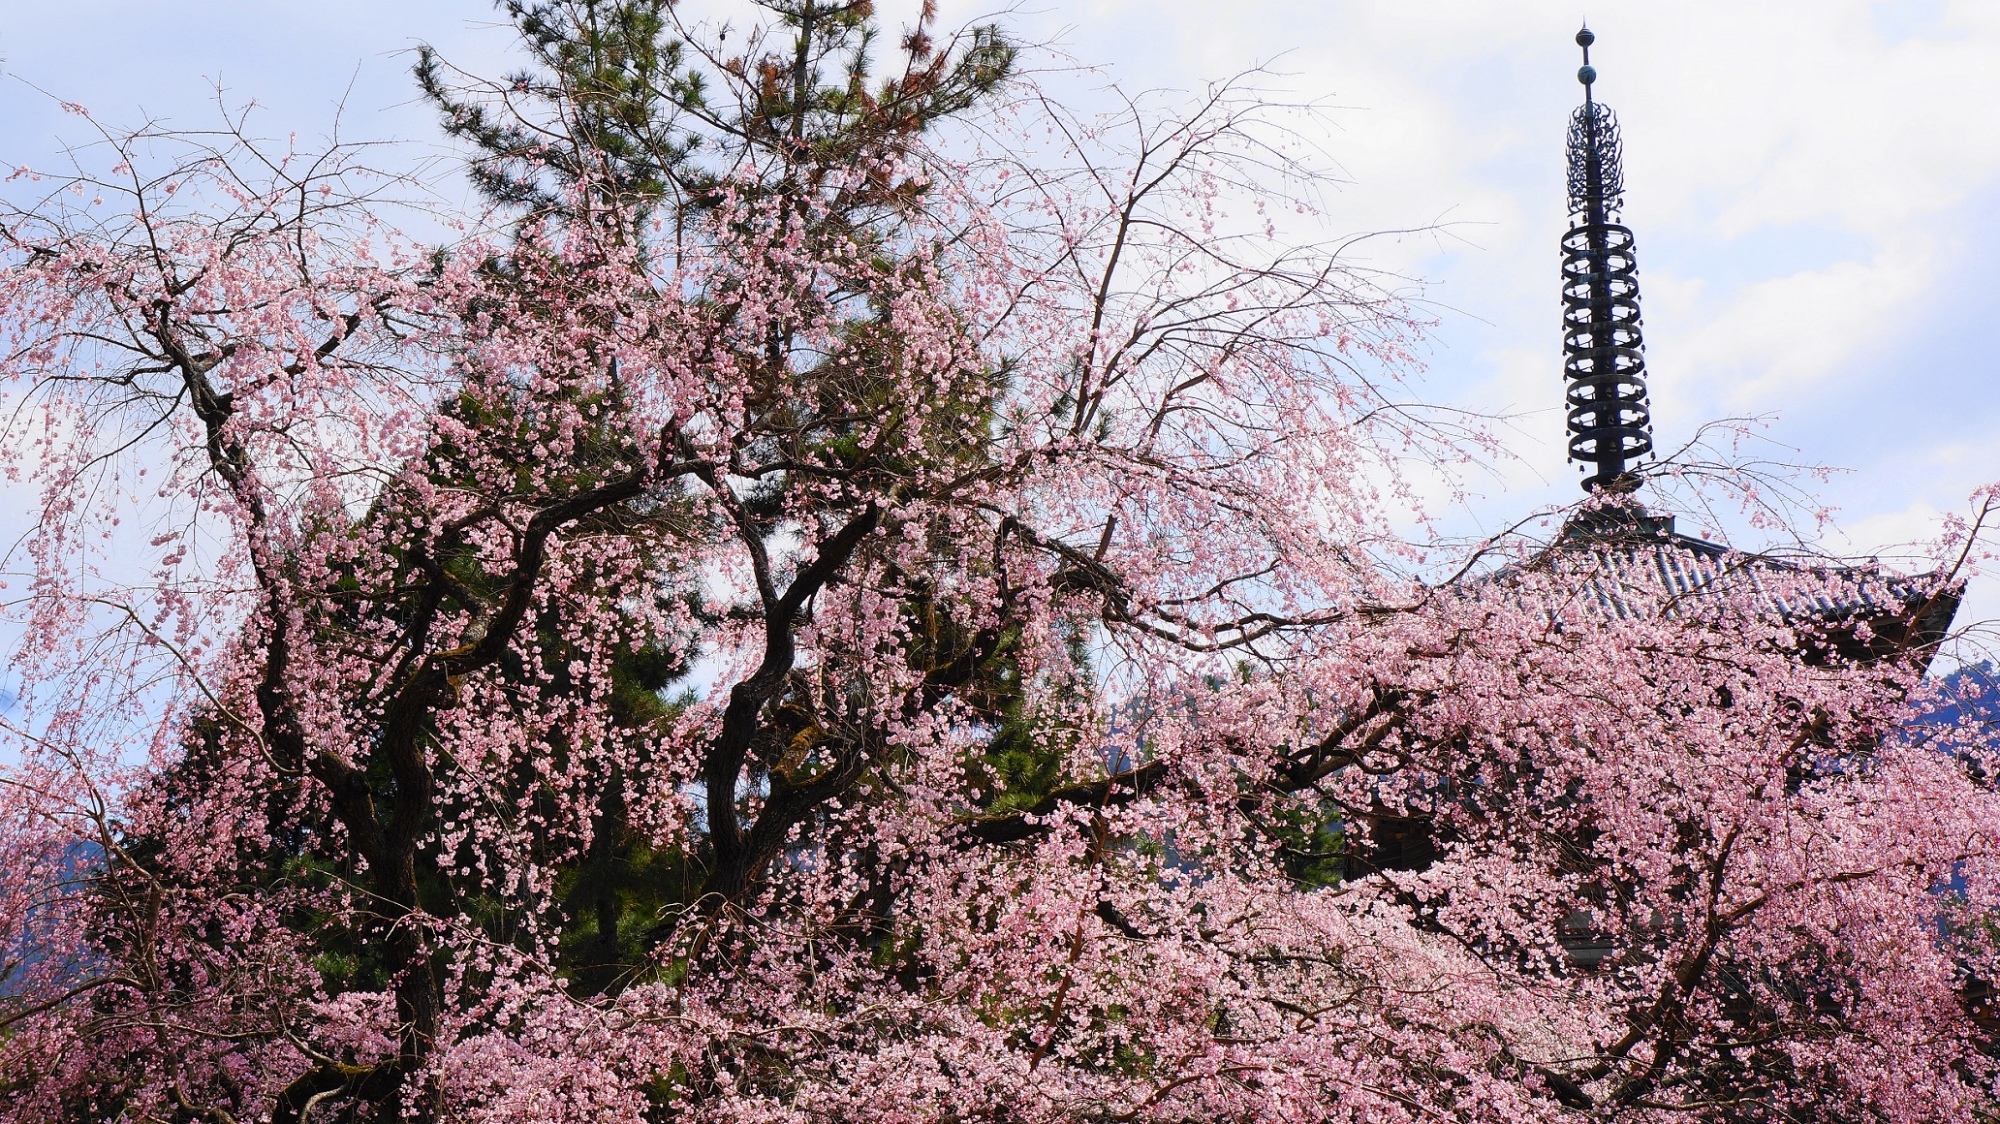 醍醐の花見で有名な桜の名所の世界遺産醍醐寺の五重塔と桜